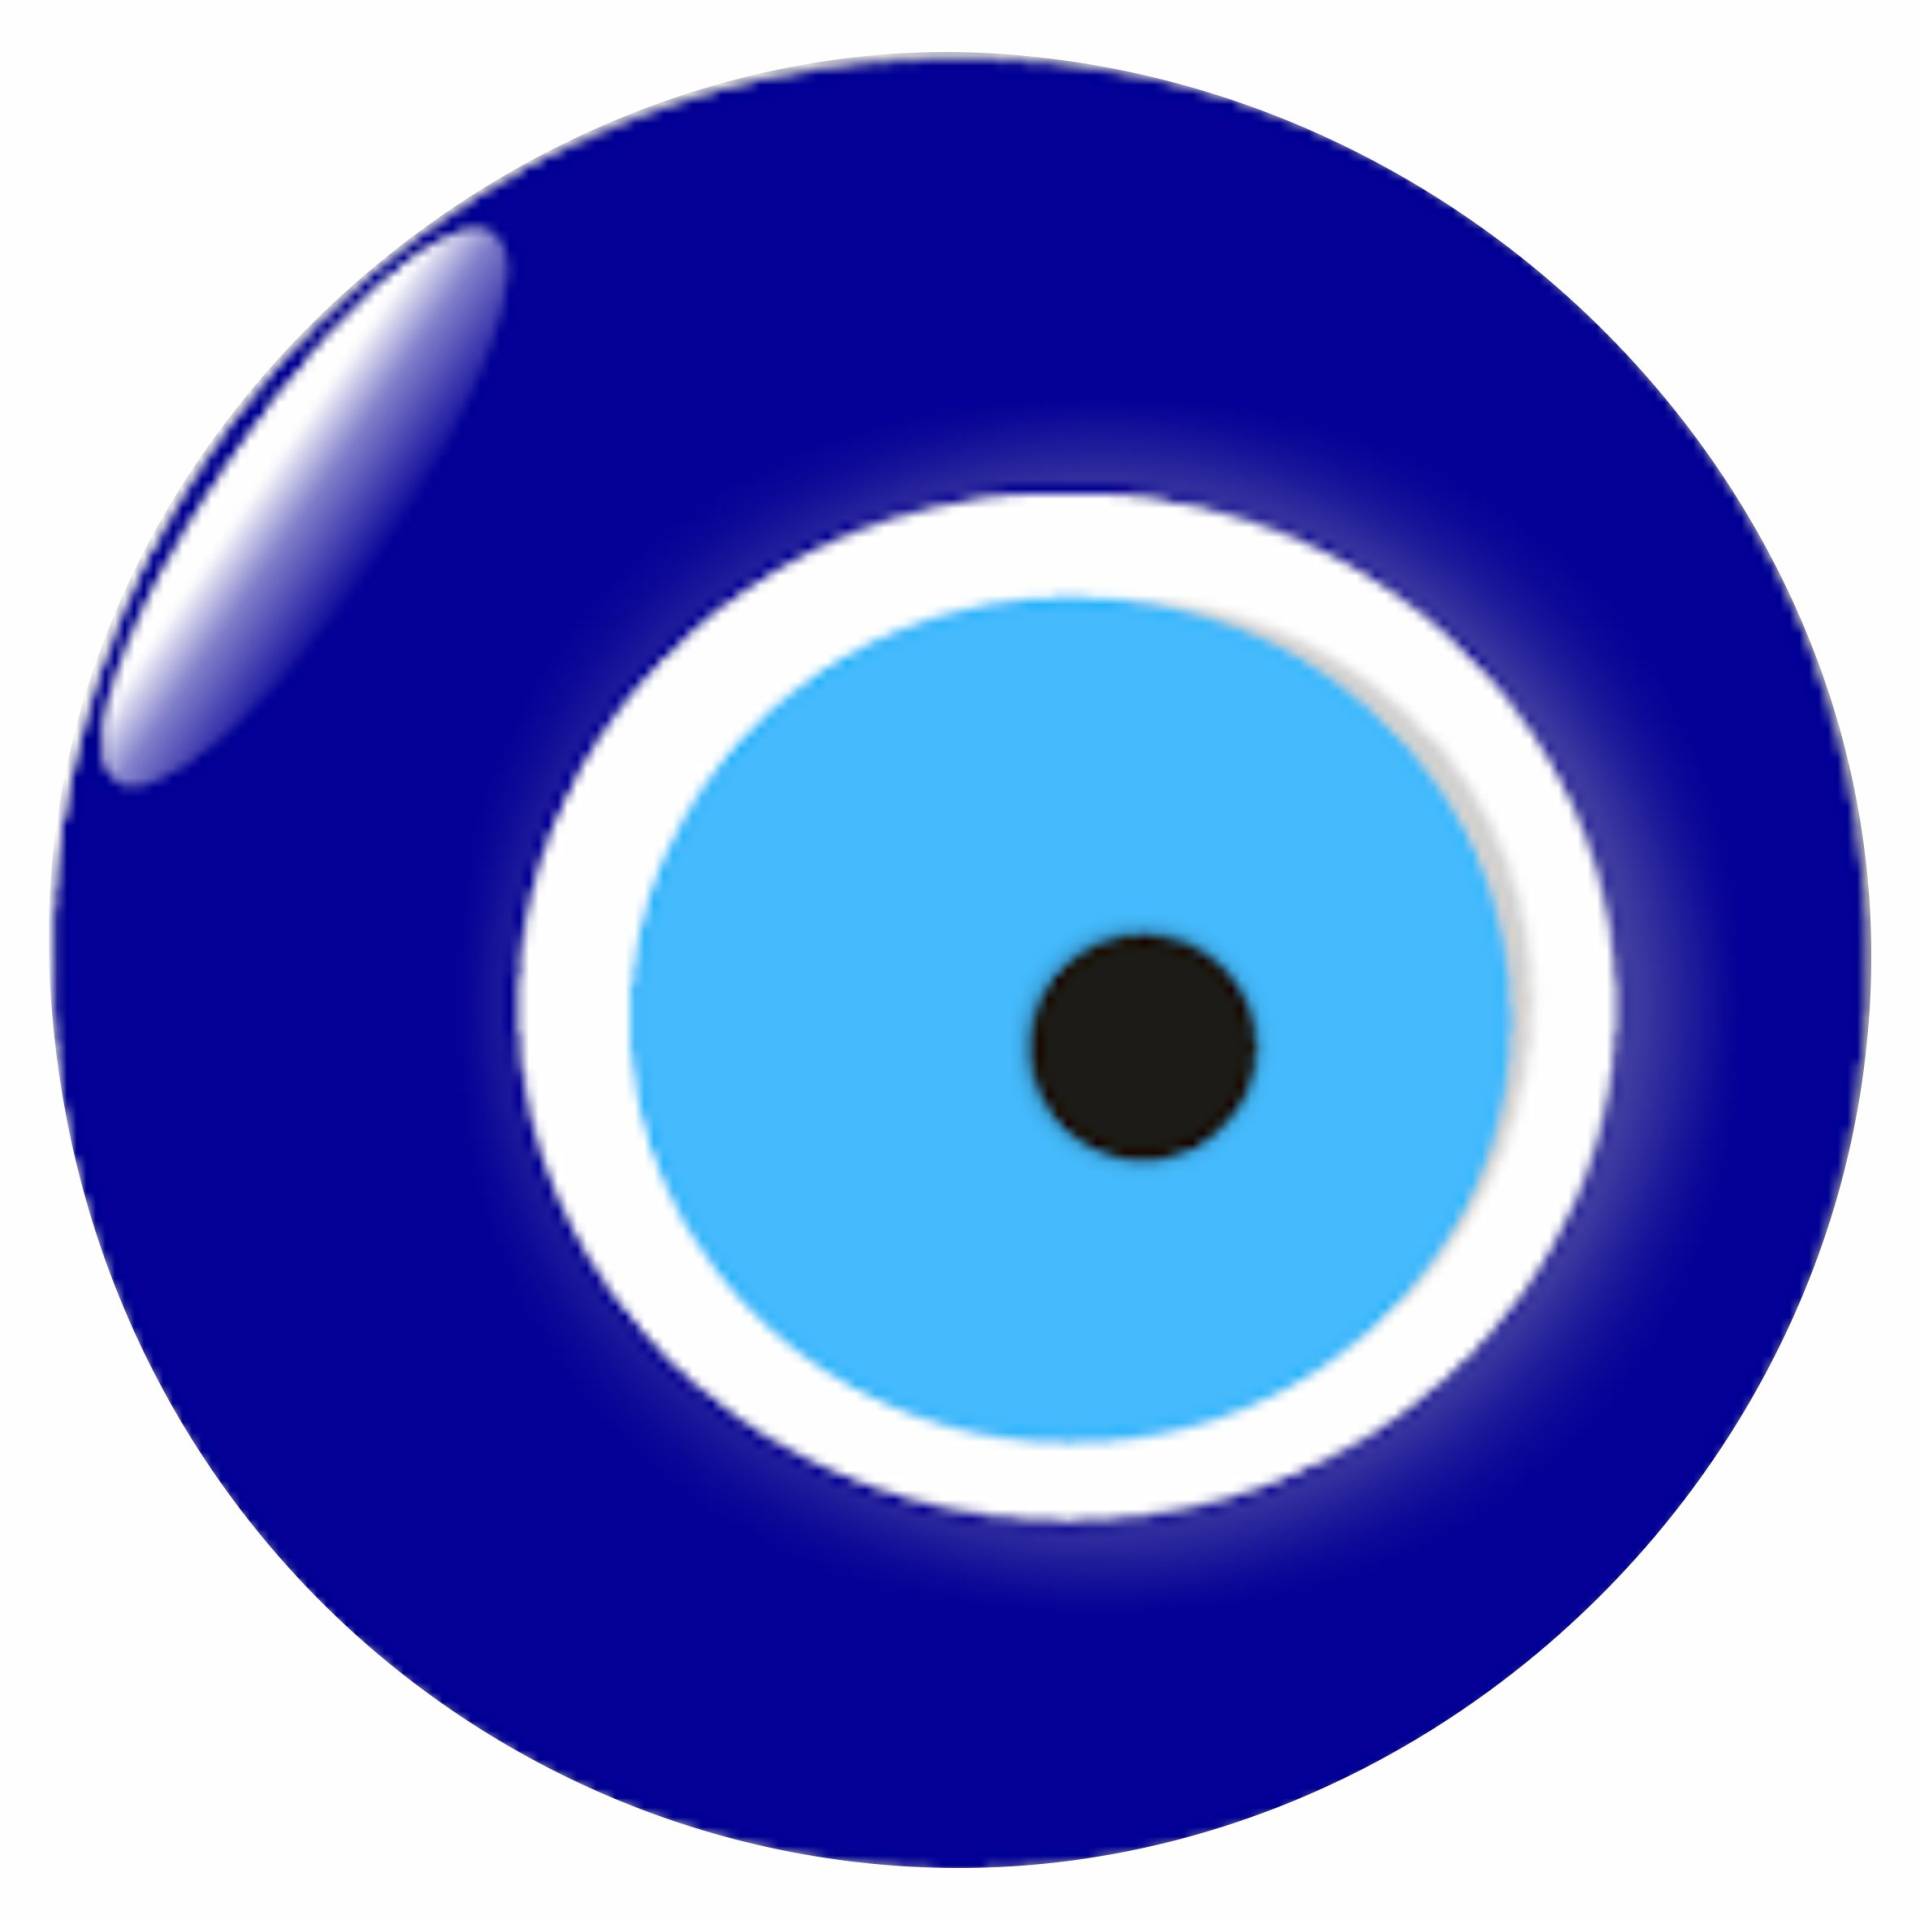 Nazar Boncuk Blaues Auge Evil Eye Sticker Aufkleber Auto Laptop Handy Türkiye von Sticker Design Shop